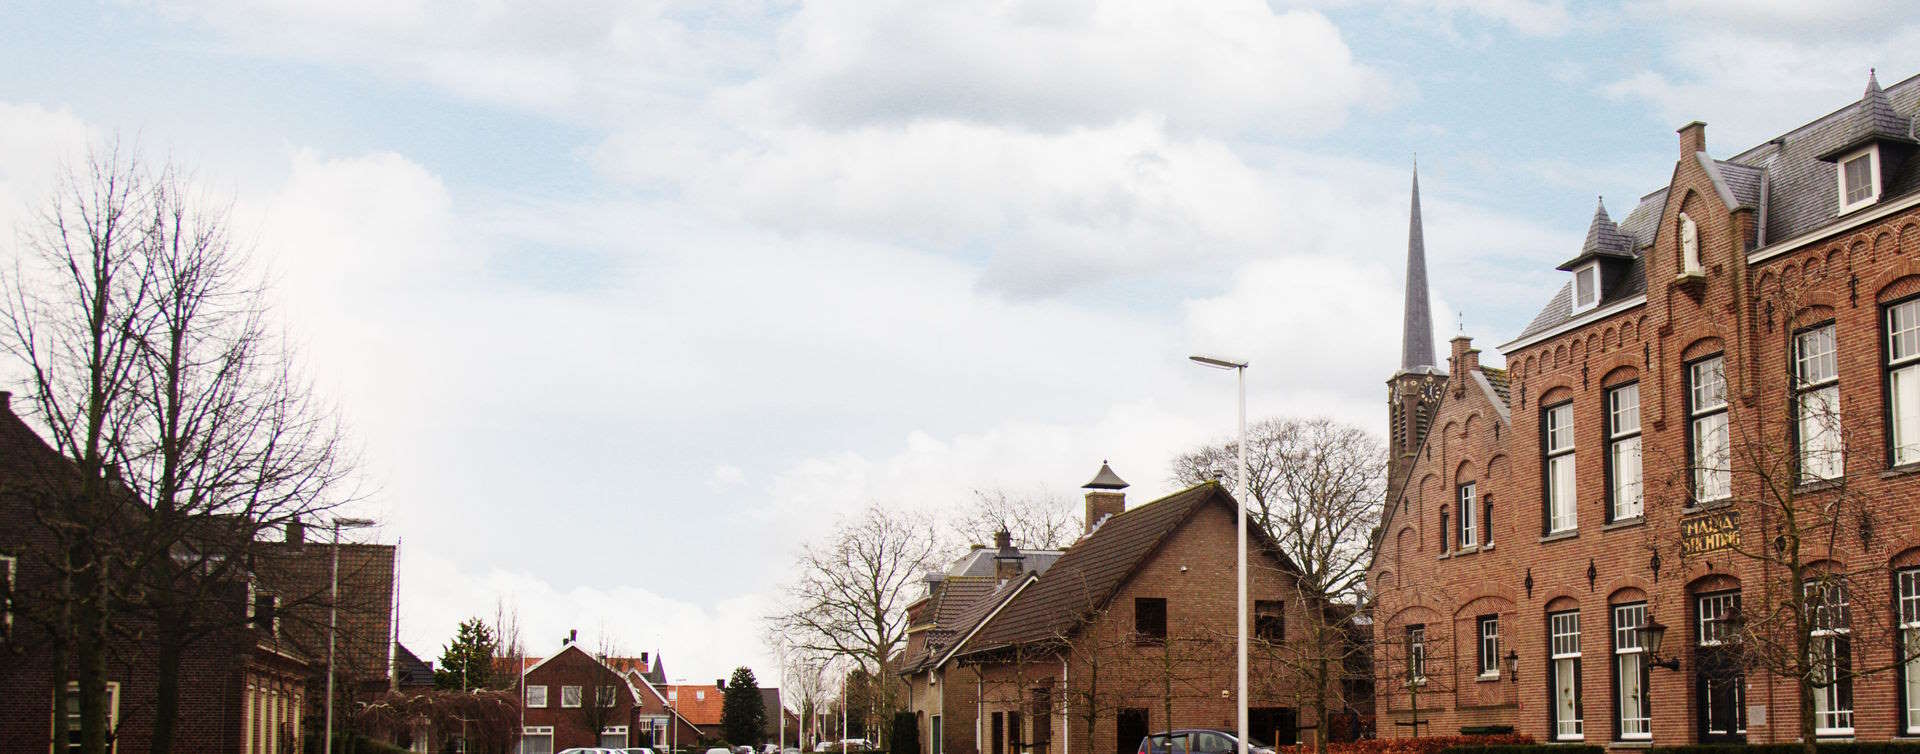 De omgeving van Klerks Financiele Diensten, RegioBank in Elshout